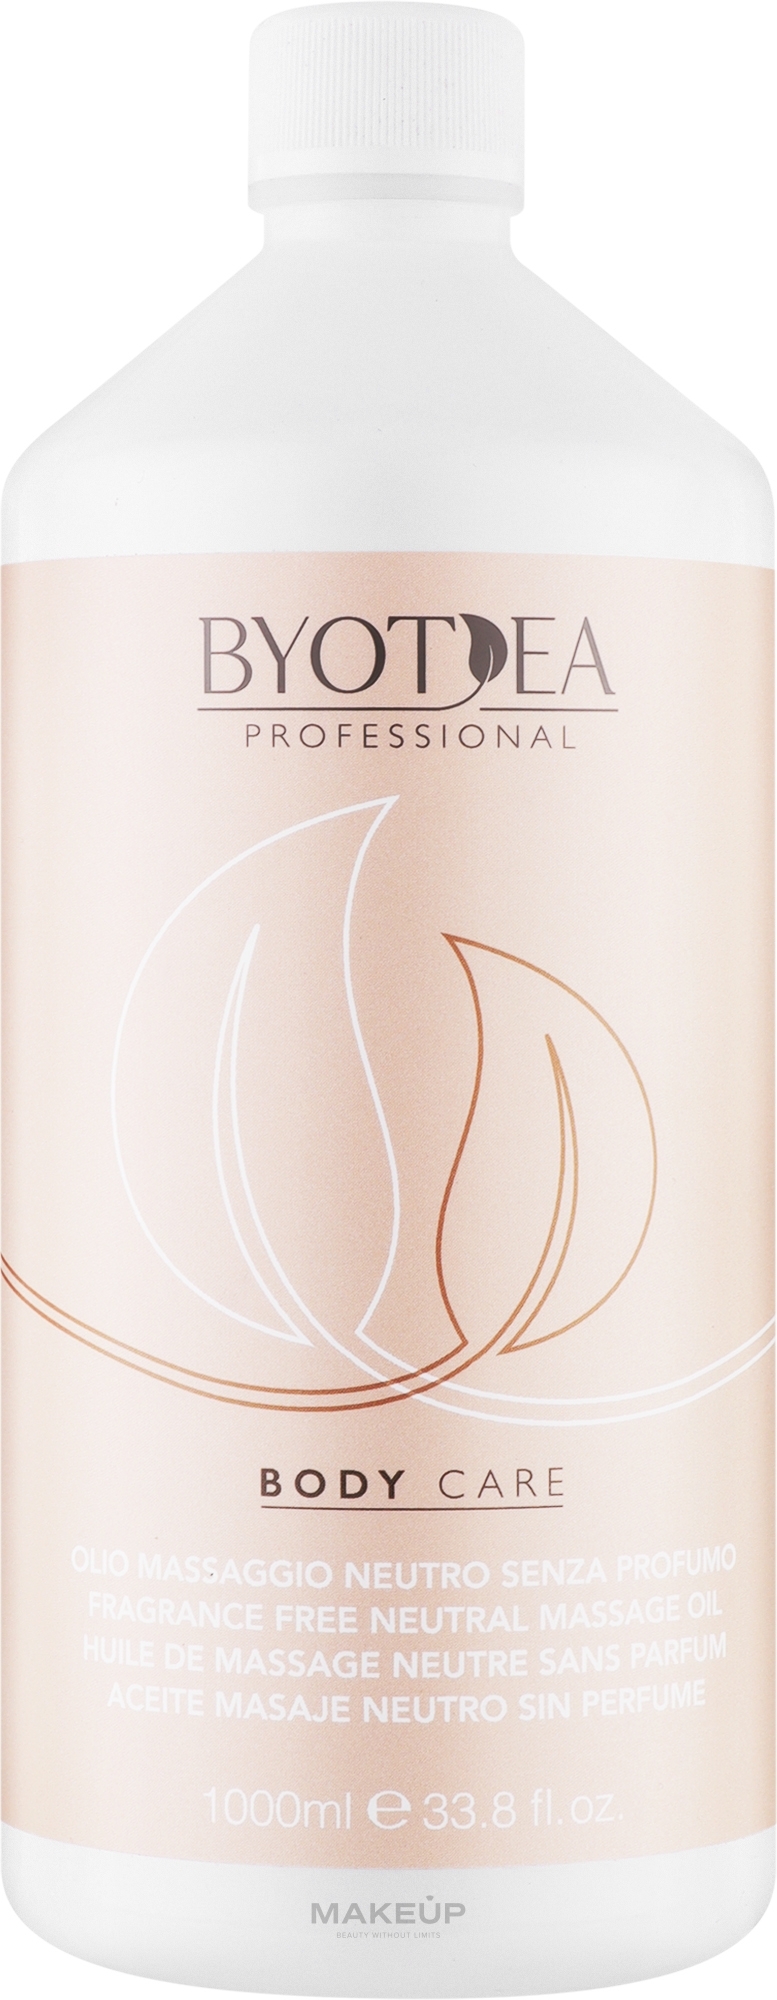 Масло для массажа нейтральное без запаха - Byothea Body Care Fragrance Free Neutral Massage Oil — фото 1000ml